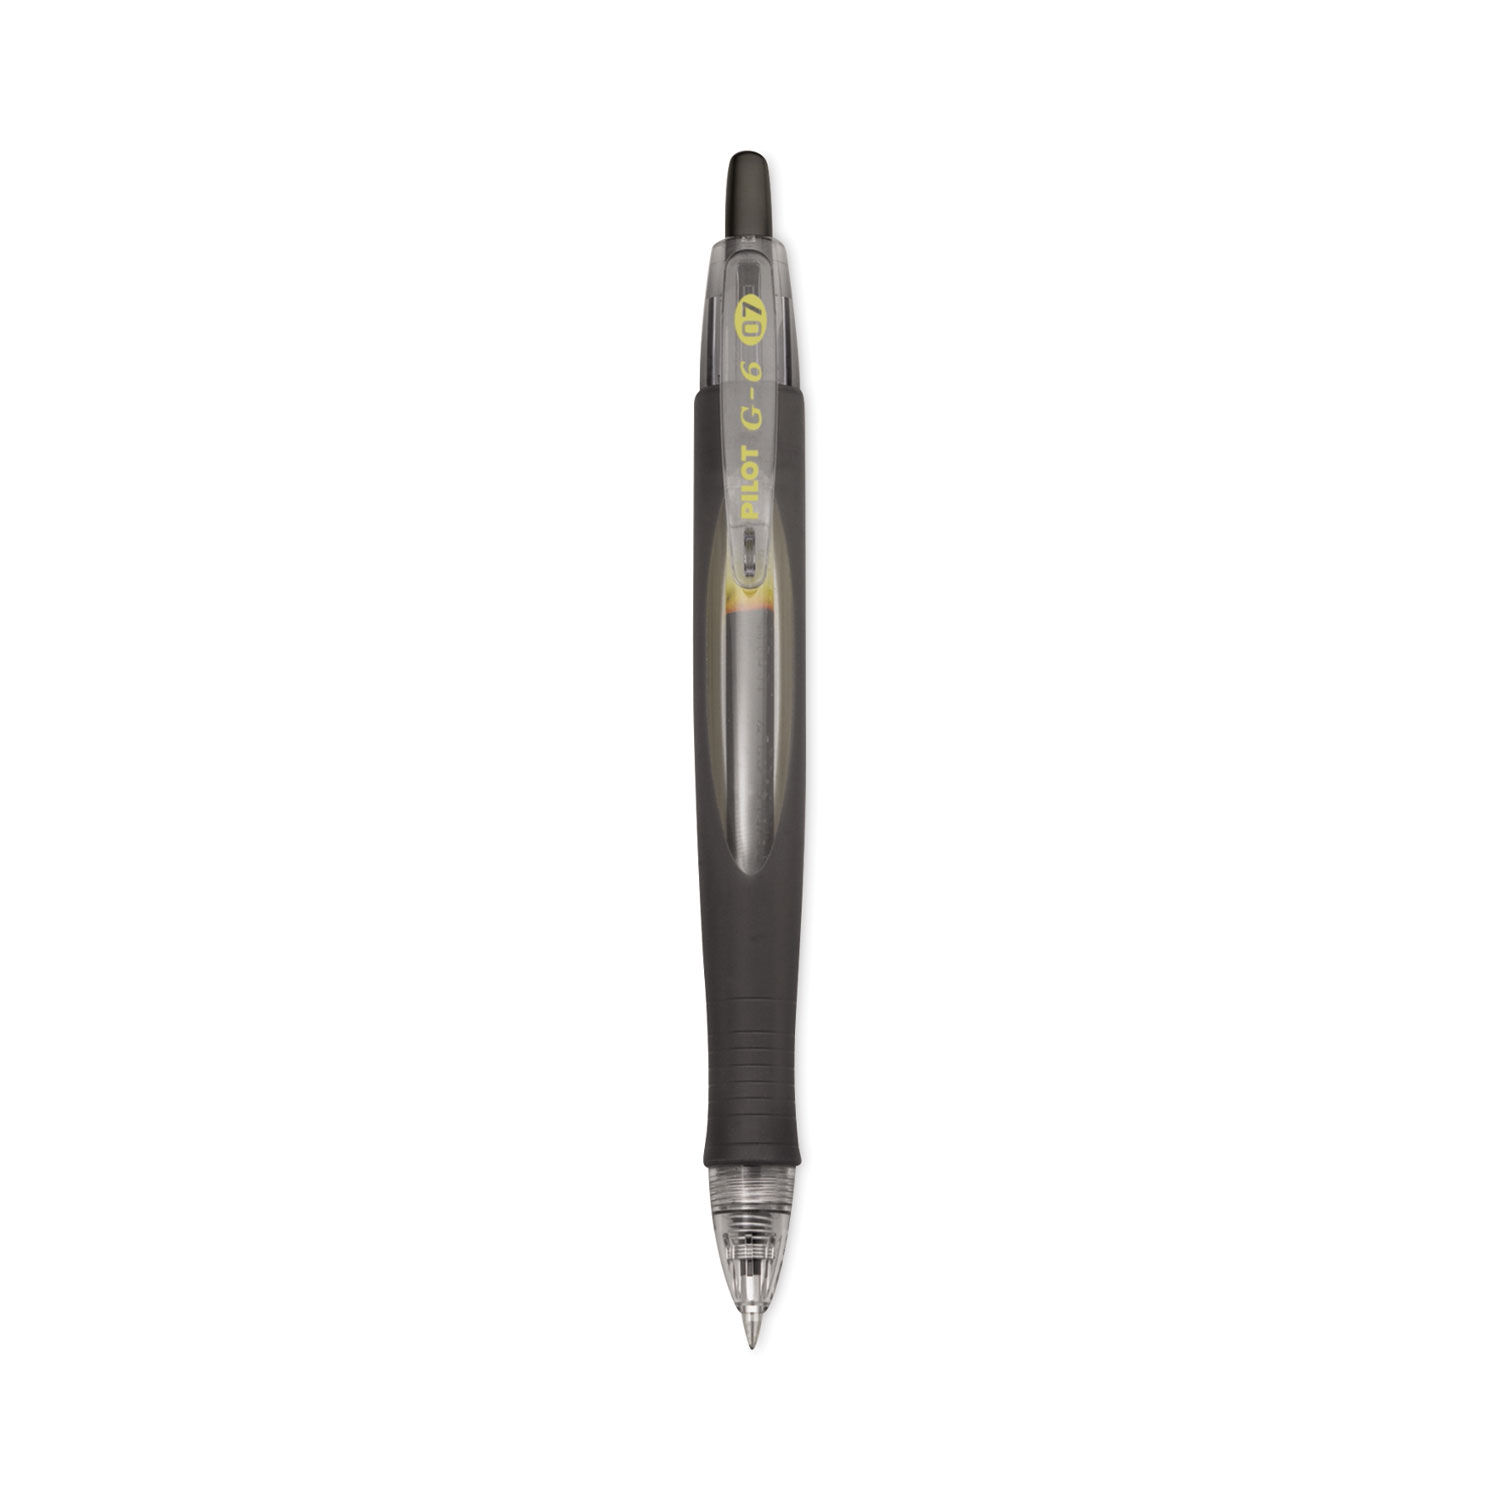 G6 Gel Pen by Pilot® PIL31401 | OnTimeSupplies.com